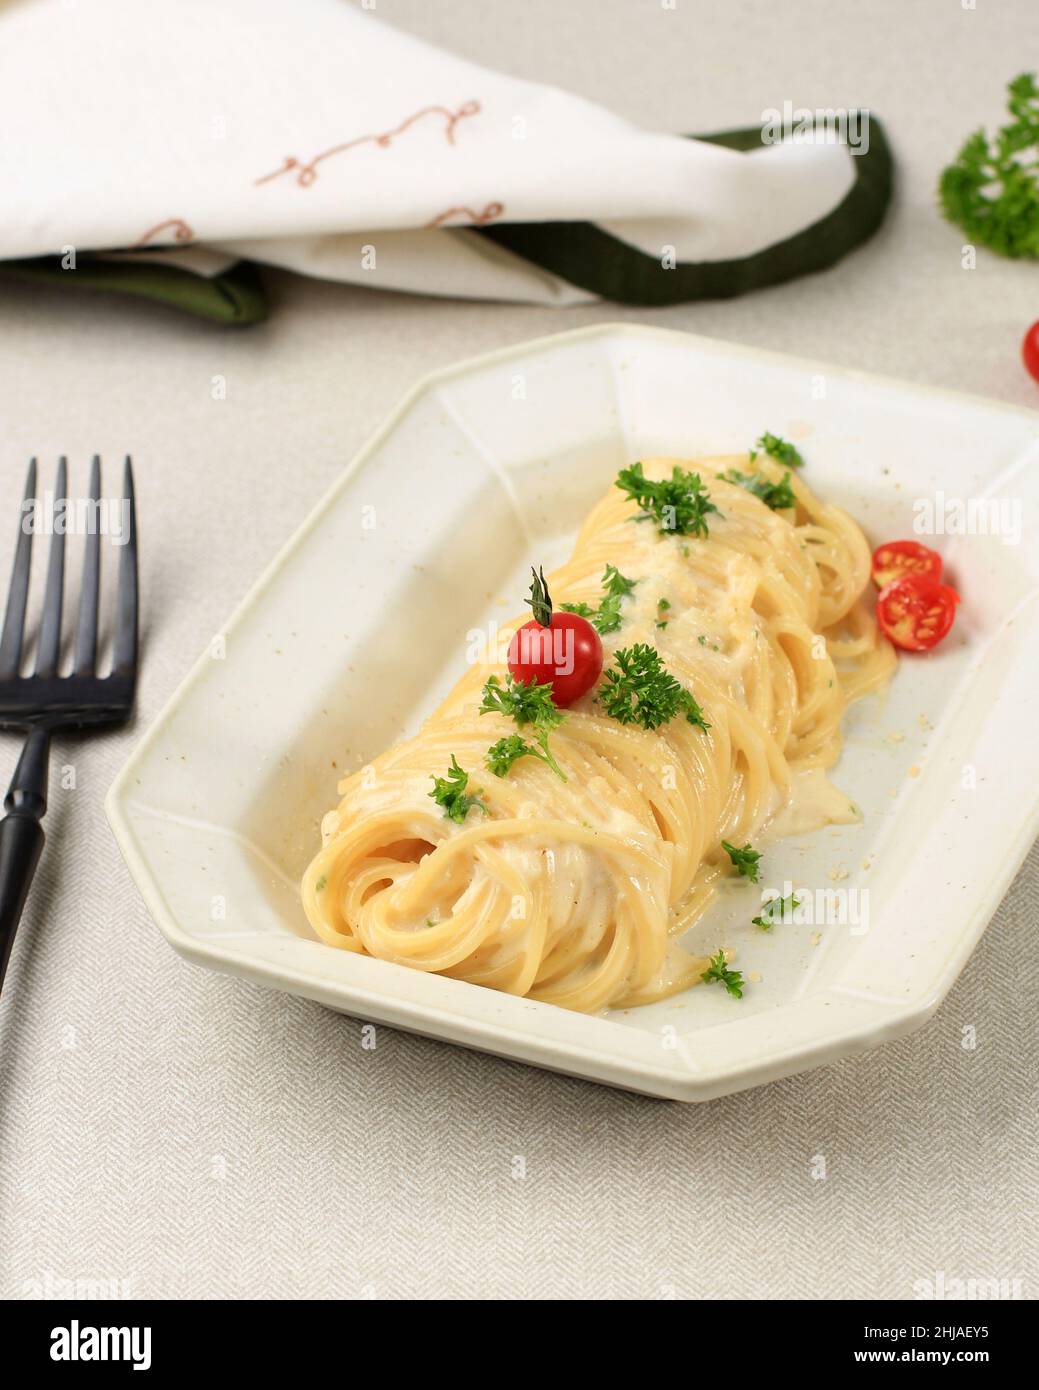 Pâtes Carbonara, spaghetti aux œufs, parmesan dur, persil et sauce à la crème.Cuisine italienne traditionnelle.Pâtes alla Carbonara.Focu sélectionné Banque D'Images